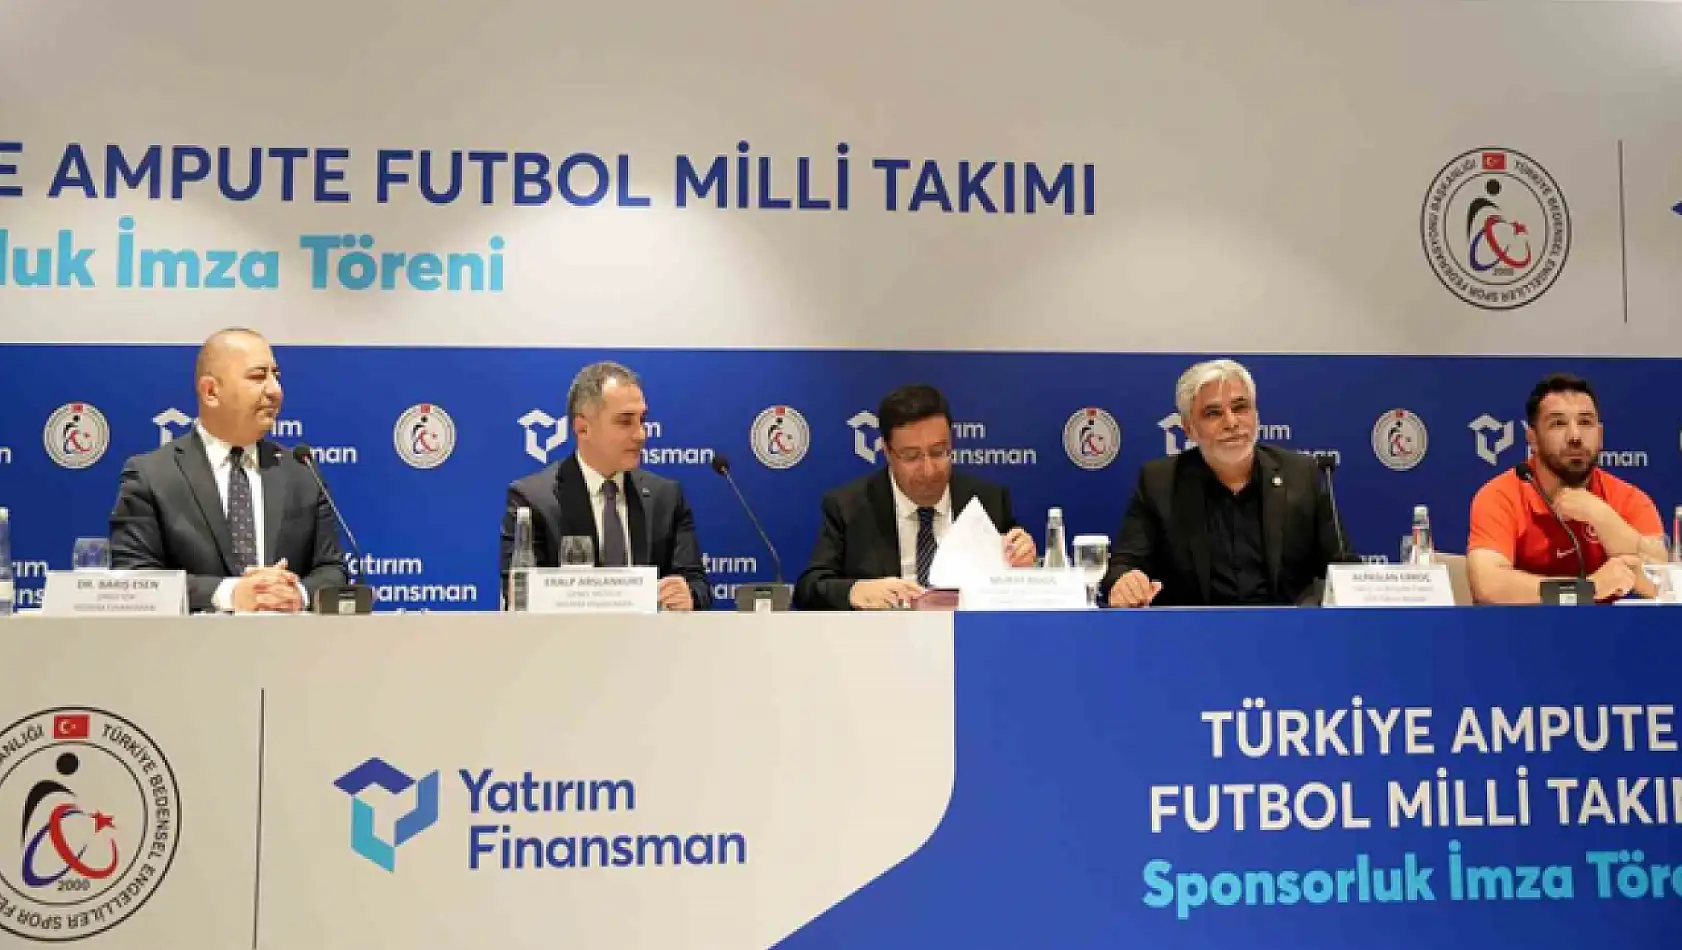 Yatırım Finansman, Ampute Futbol Milli Takımı'na sponsor oldu